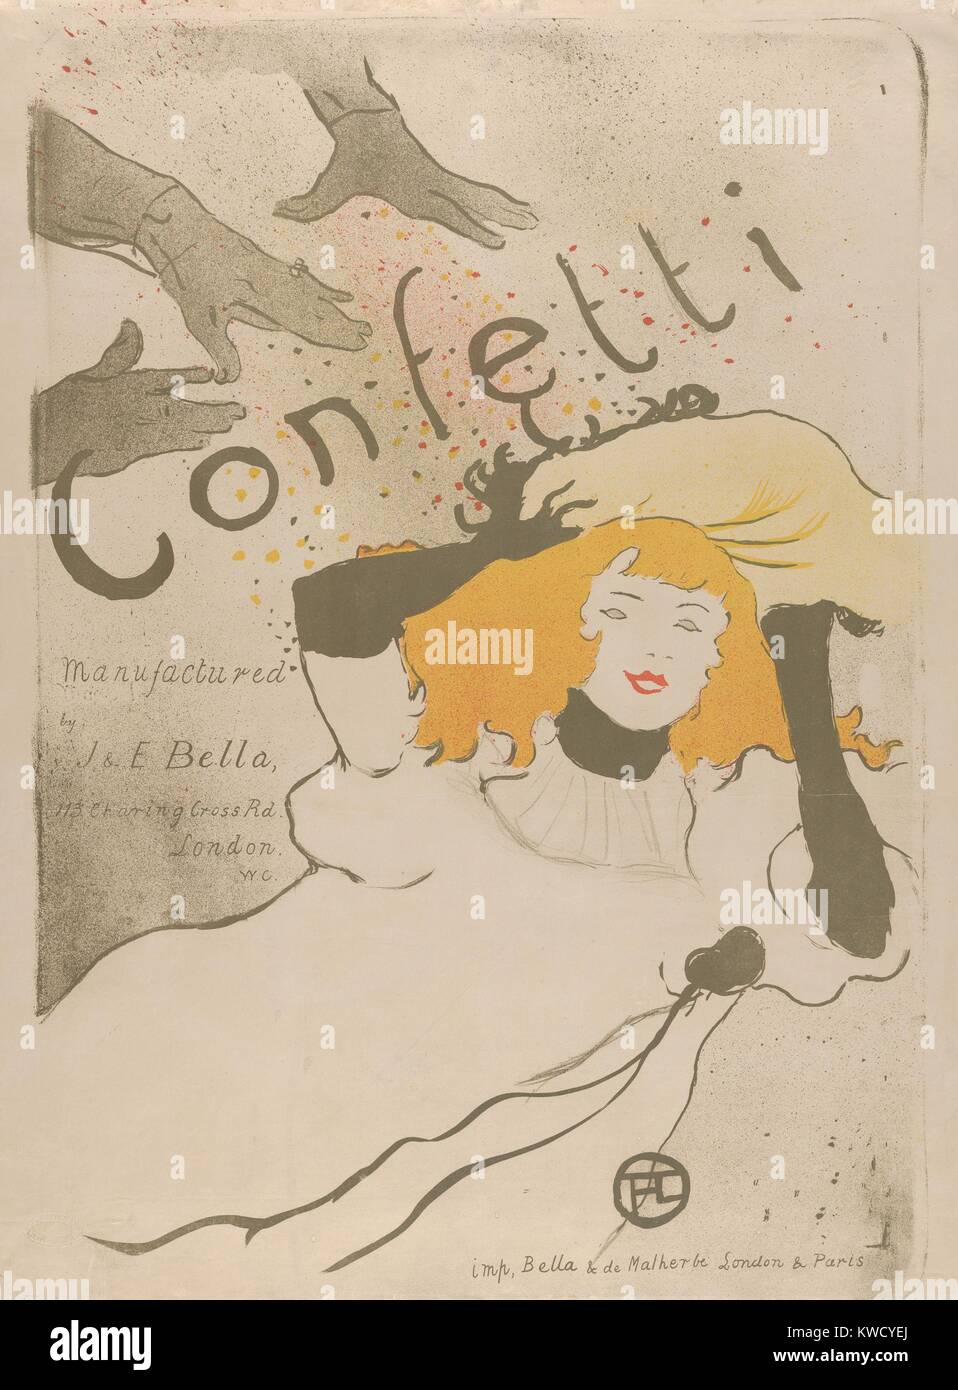 Confettis, par Henri de Toulouse-Lautrec, 1894, lithographie, postimpressionniste français. Il s'agit d'une affiche publicitaire pour leurs confettis papier faites par les frères de Bella à Londres, conduisant des fabricants de papier. Ils étaient partisans de fine art posters (BSLOC 2017 5 74) Banque D'Images